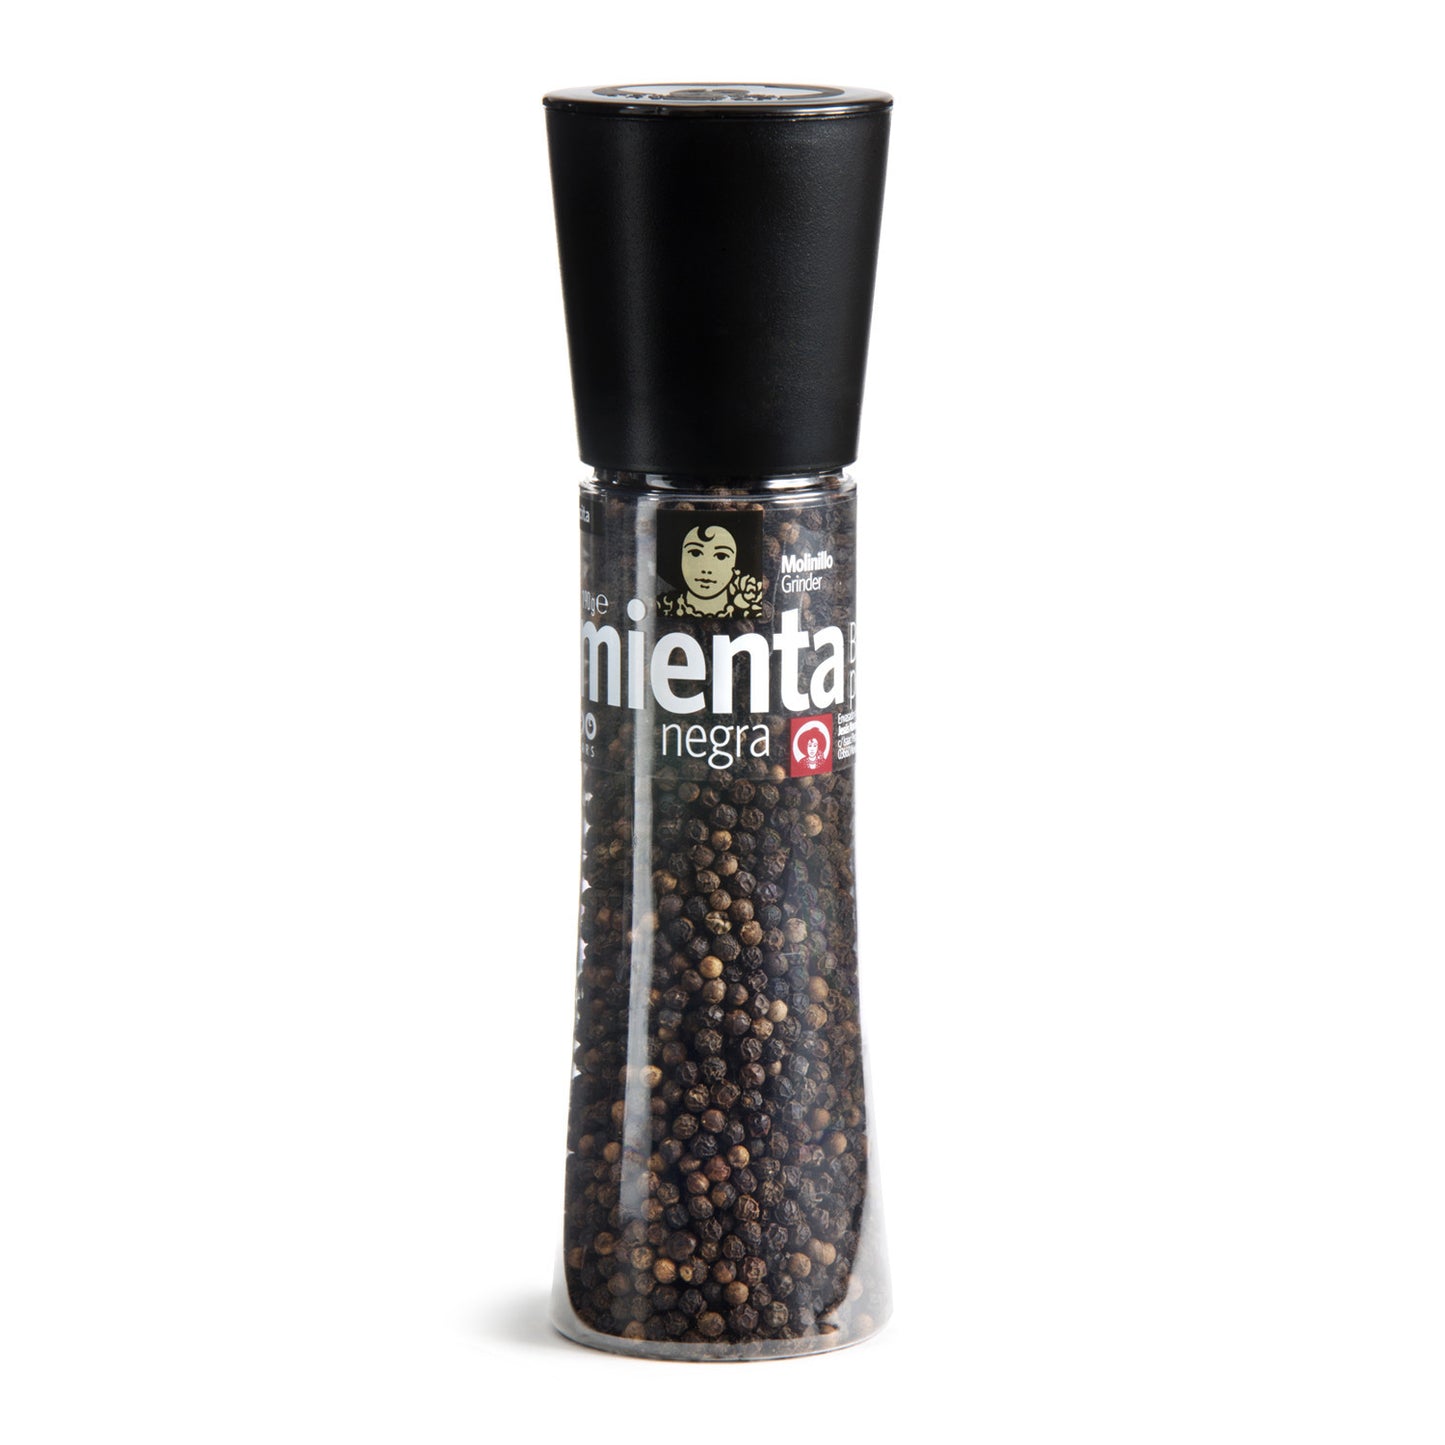 Mediterranean Sea Salt & Black Pepper Grinder Set of 2